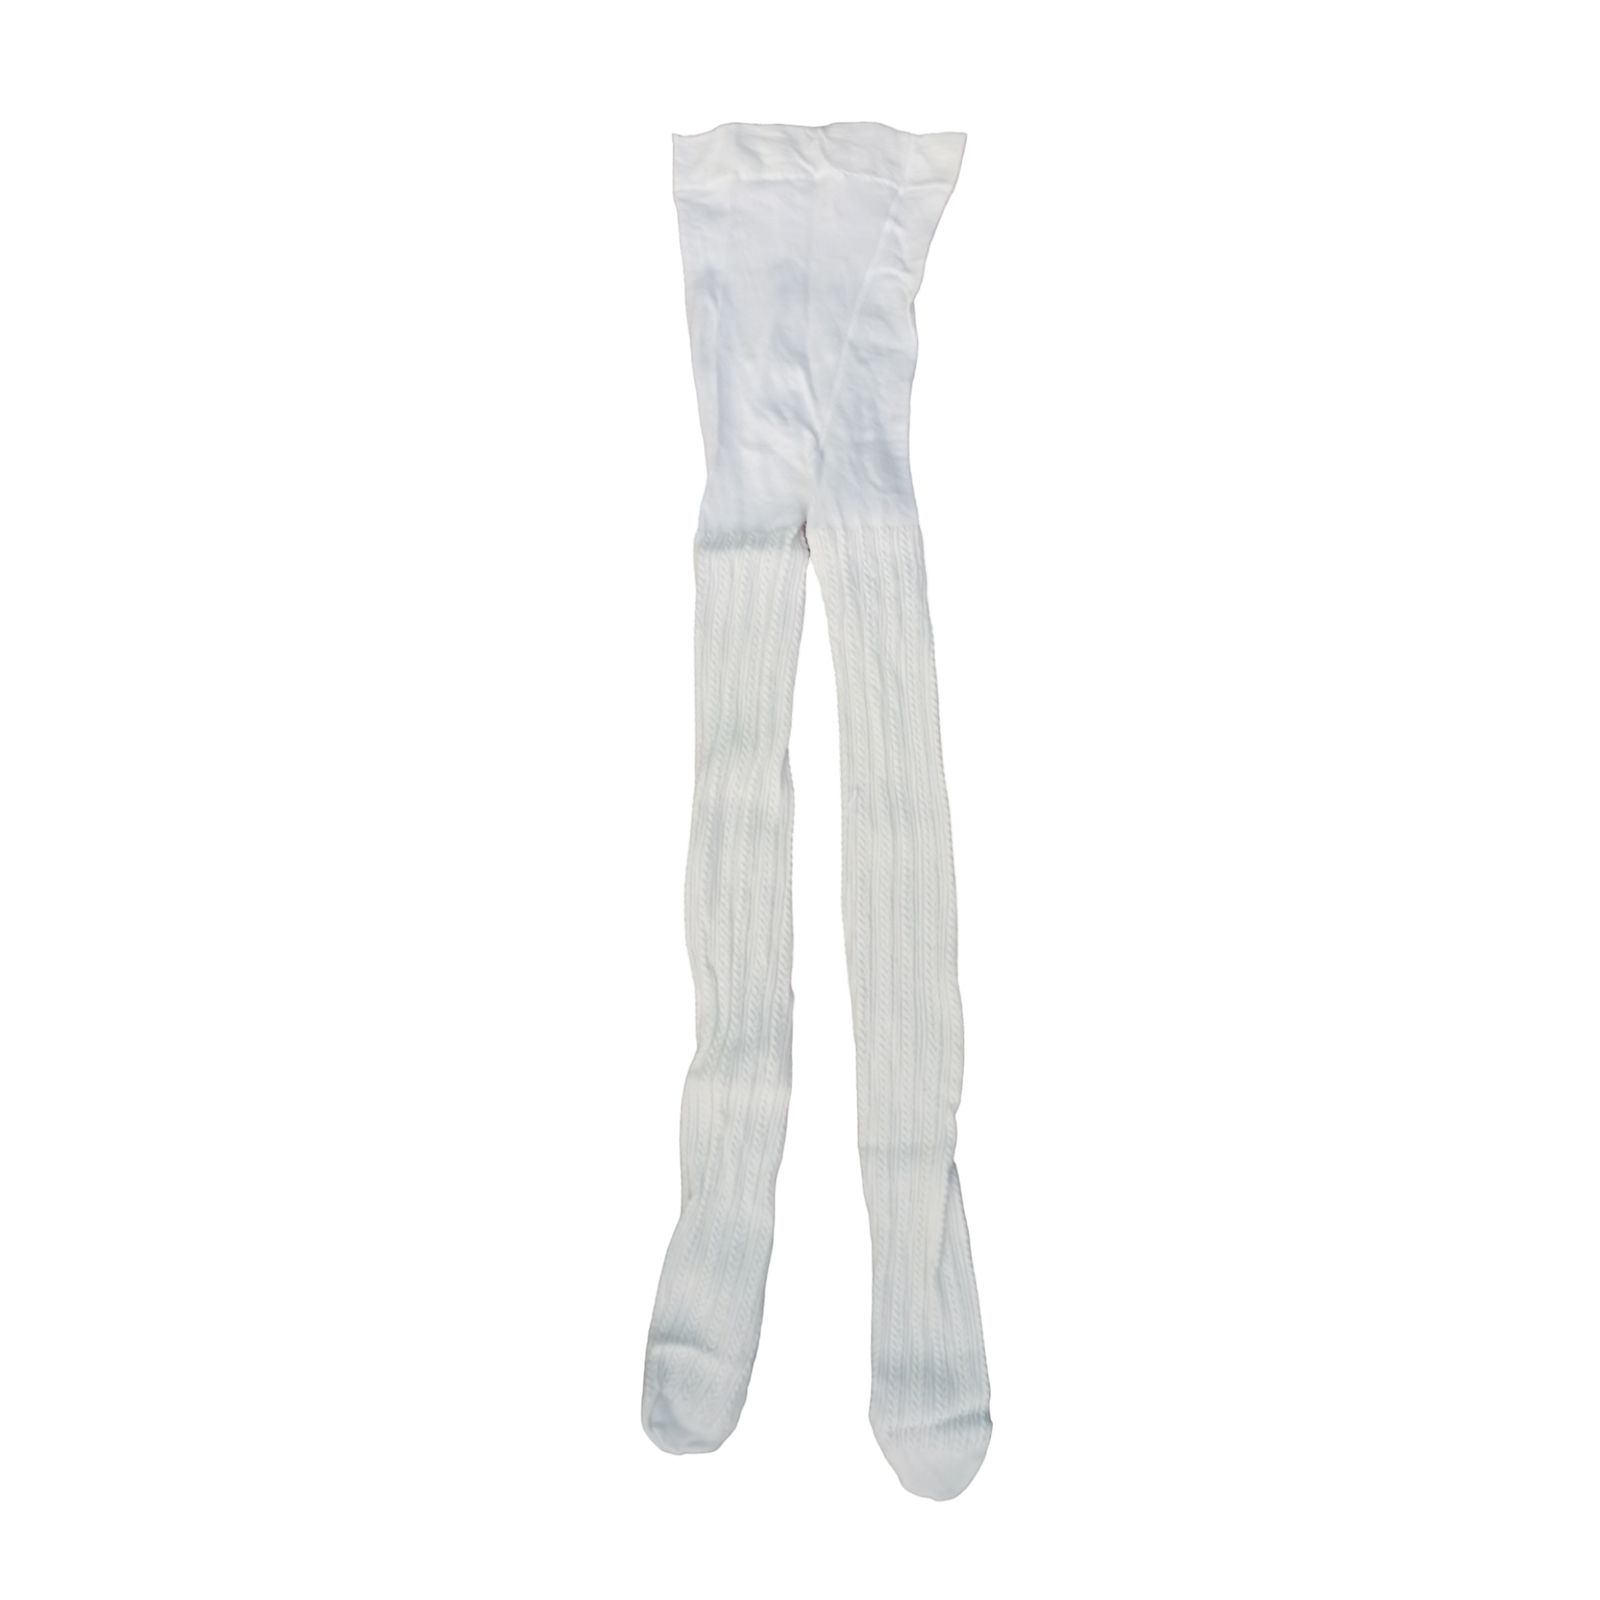 جوراب شلواری دخترانه پنتی مدل کارینا بافت گندمی رنگ سفید -  - 1